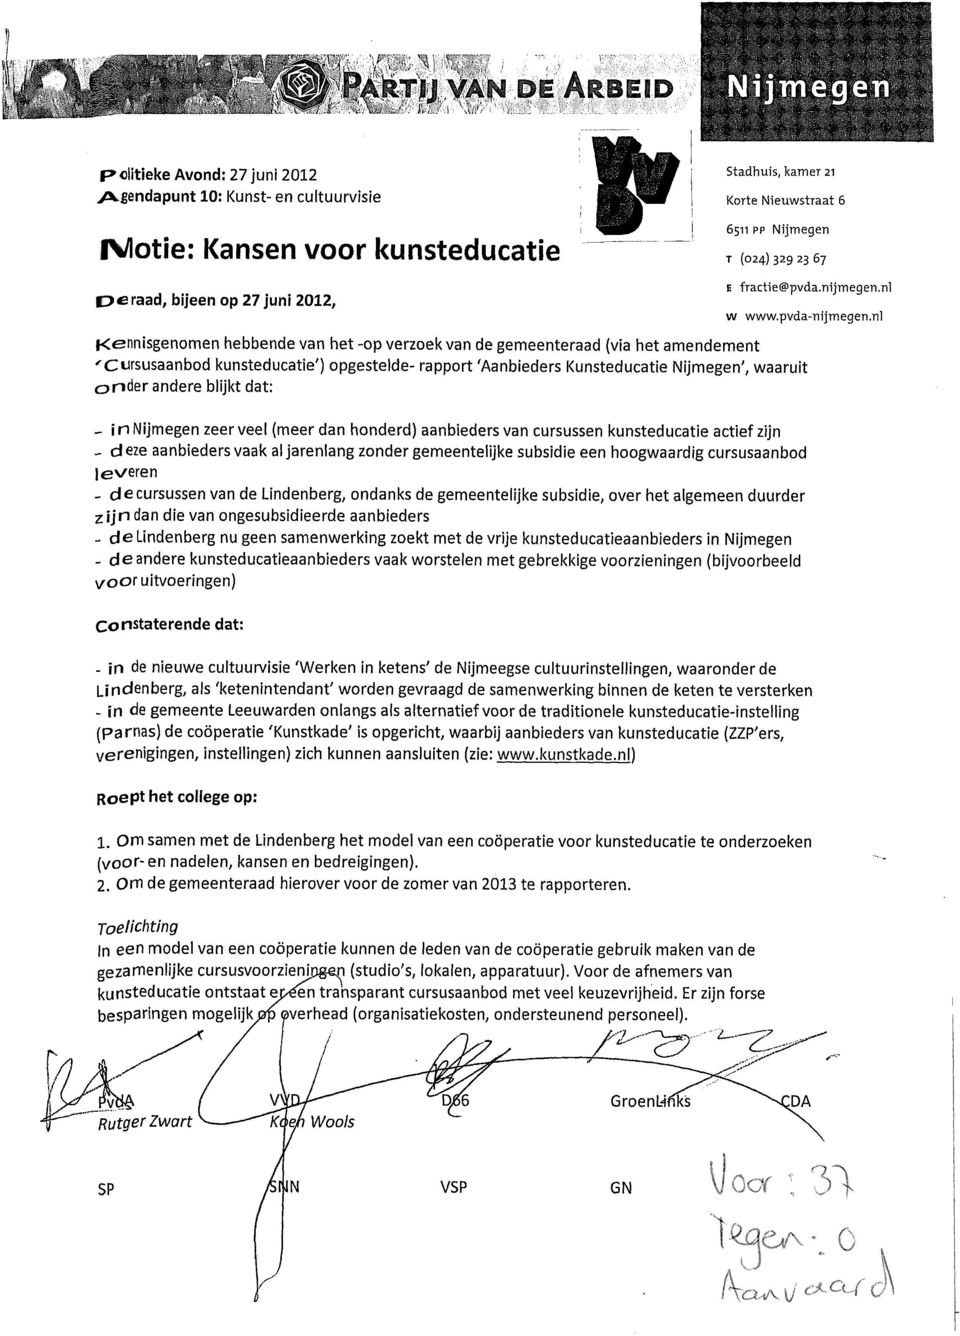 nl Kennisgenomen hebbende van het -op verzoek van de gemeenteraad (via het amendement 'Cursusaanbod kunsteducatie') opgestelde- rapport 'Aanbieders Kunsteducatie Nijmegen', waaruit onder andere